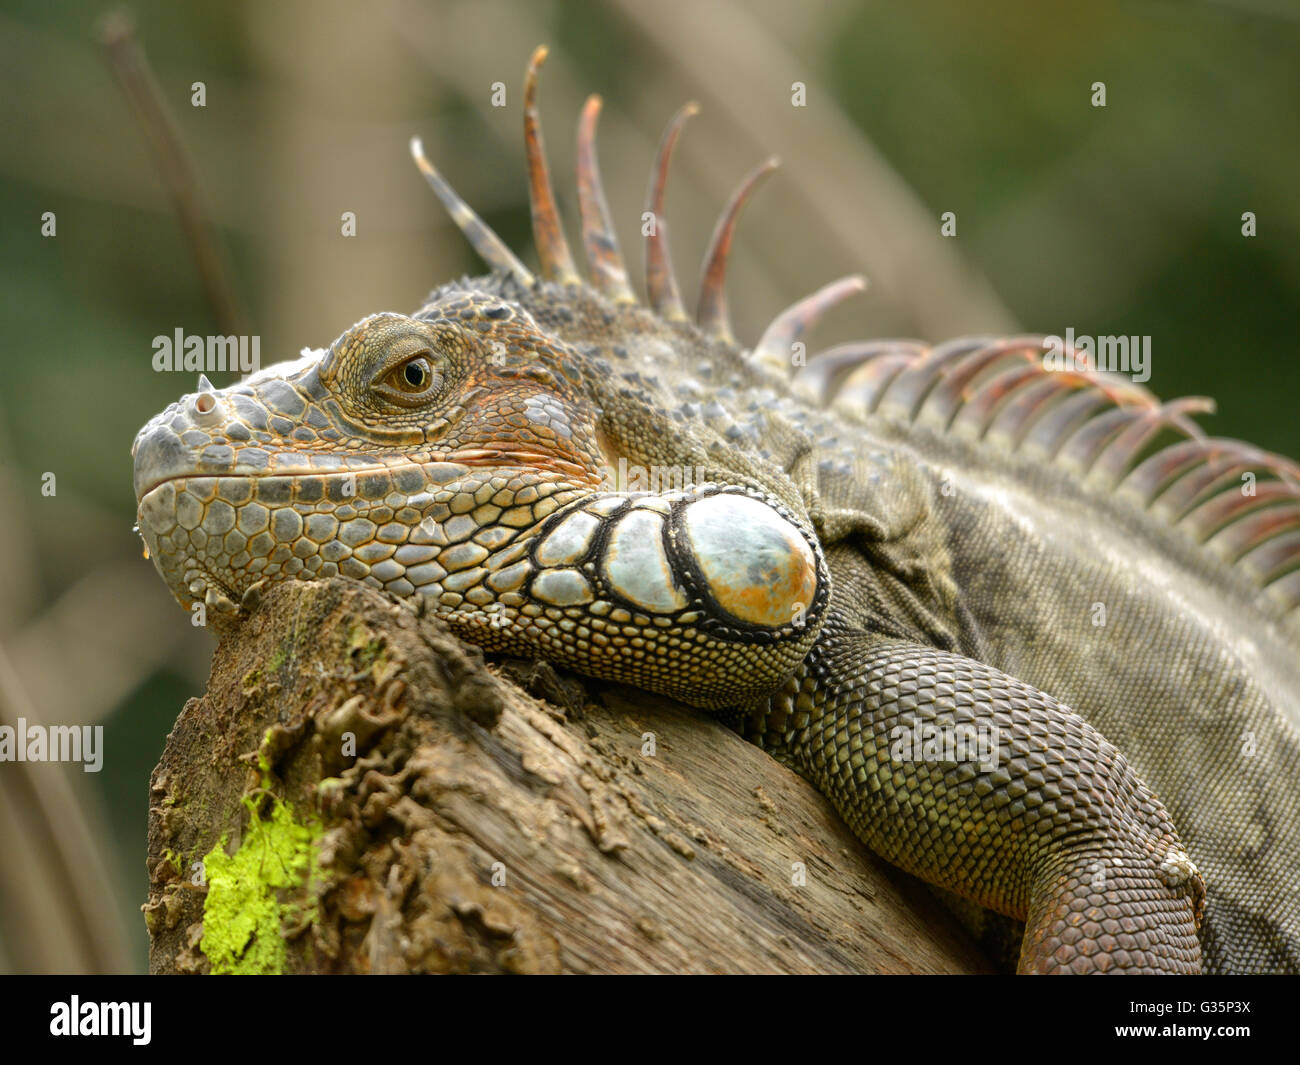 Retrato de iguana verde o común la iguana (Iguana iguana) Foto de stock